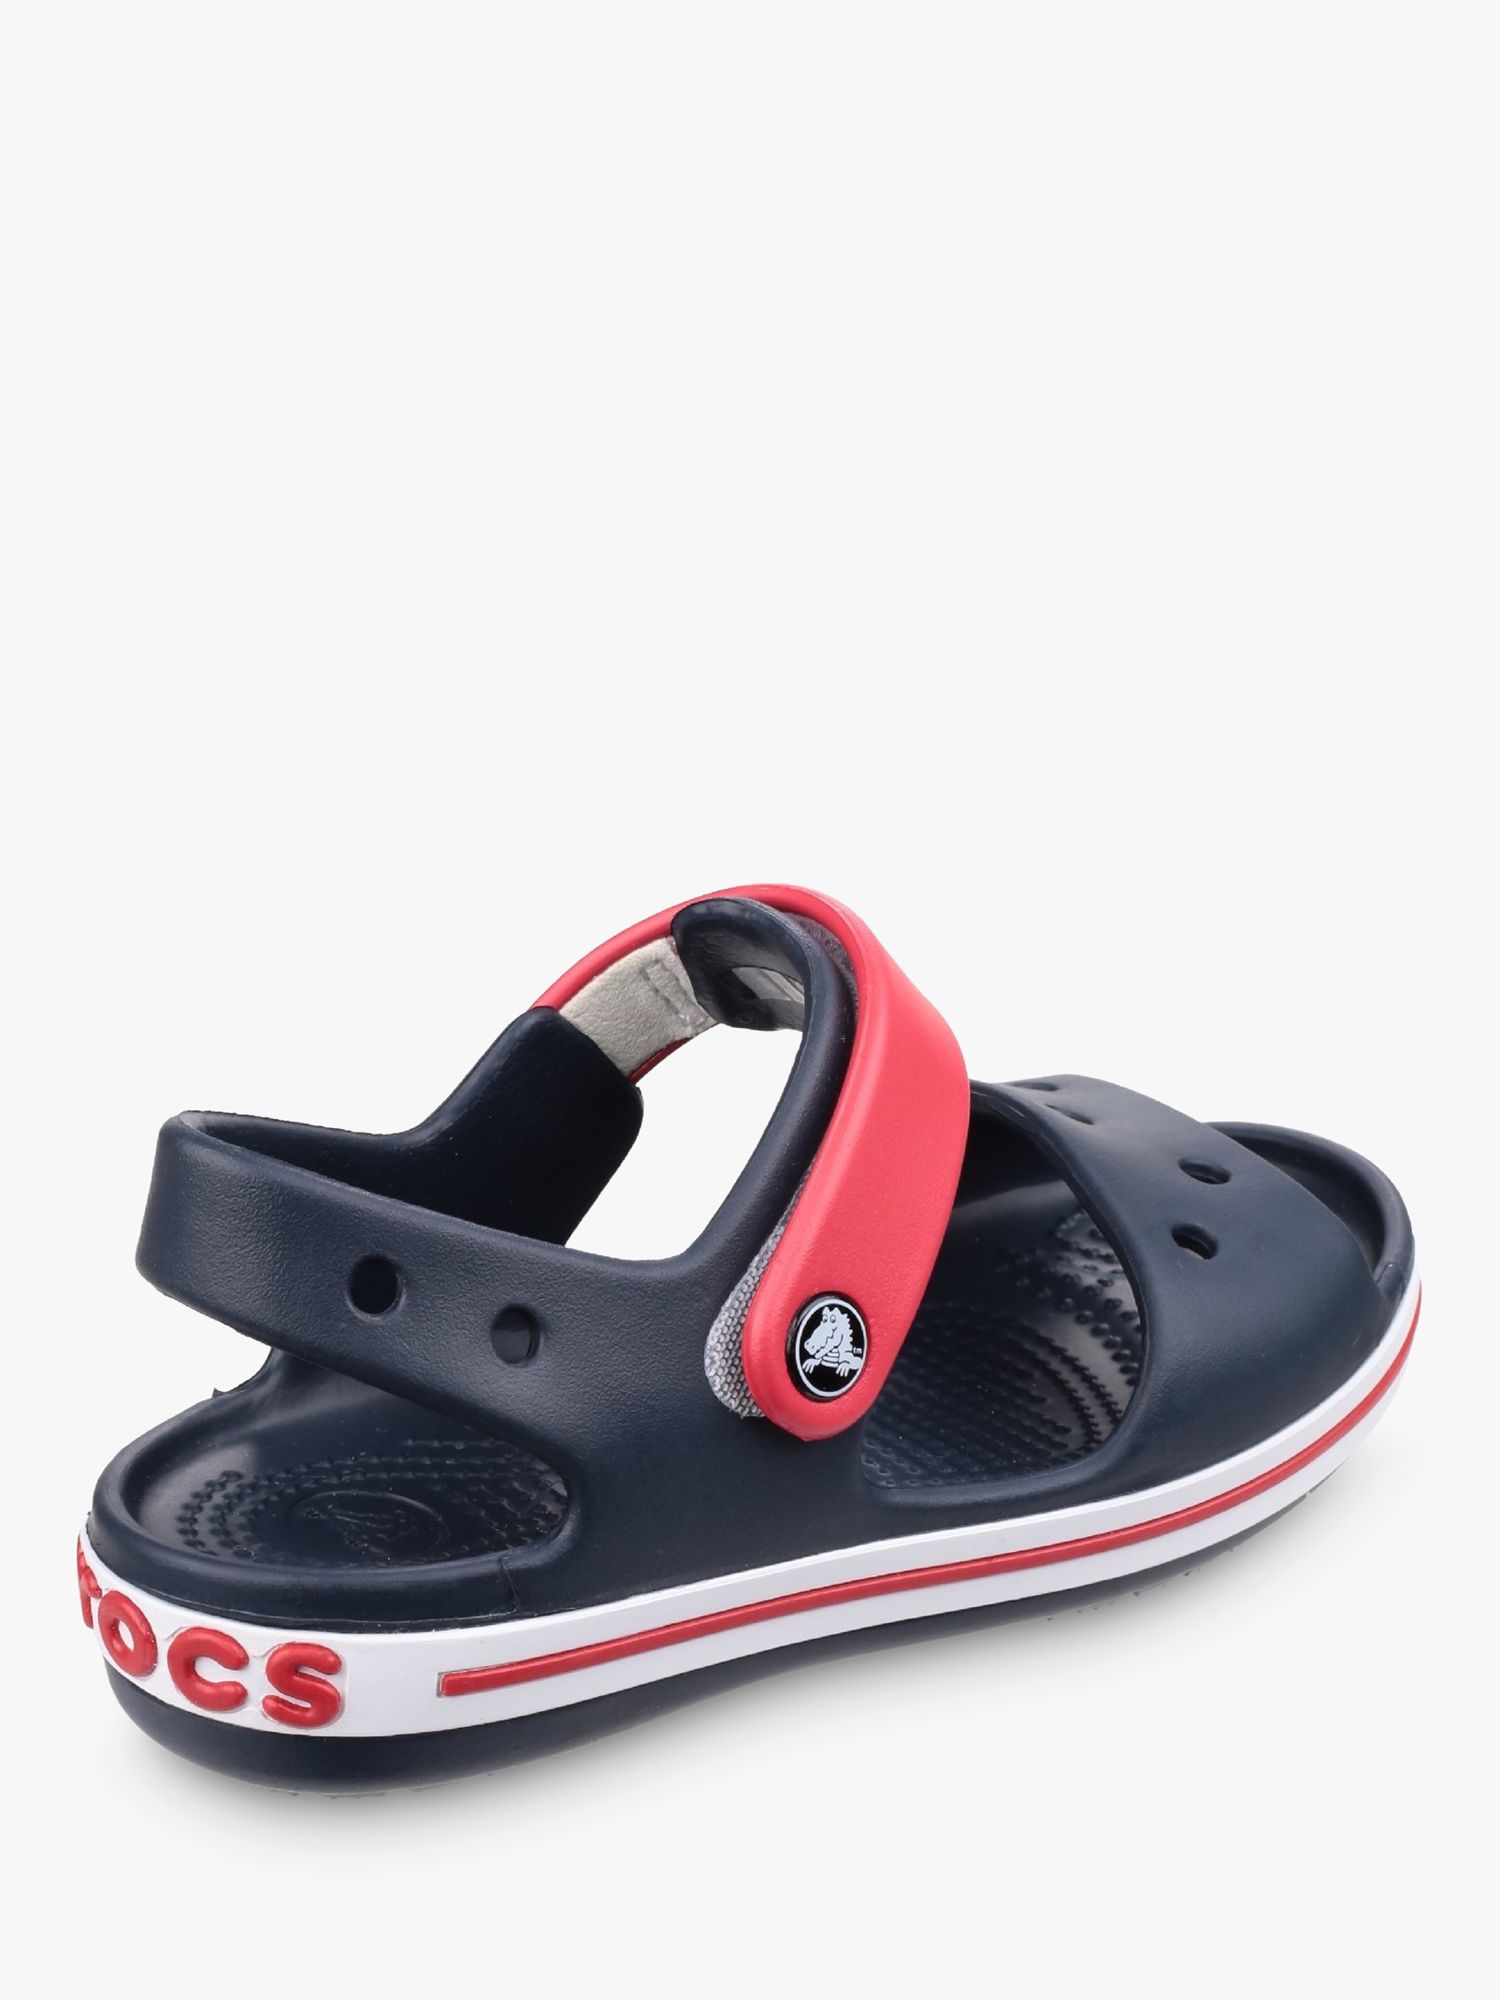 Buy Crocs Kids' Crocband Sandals, Navy/Red Online at johnlewis.com